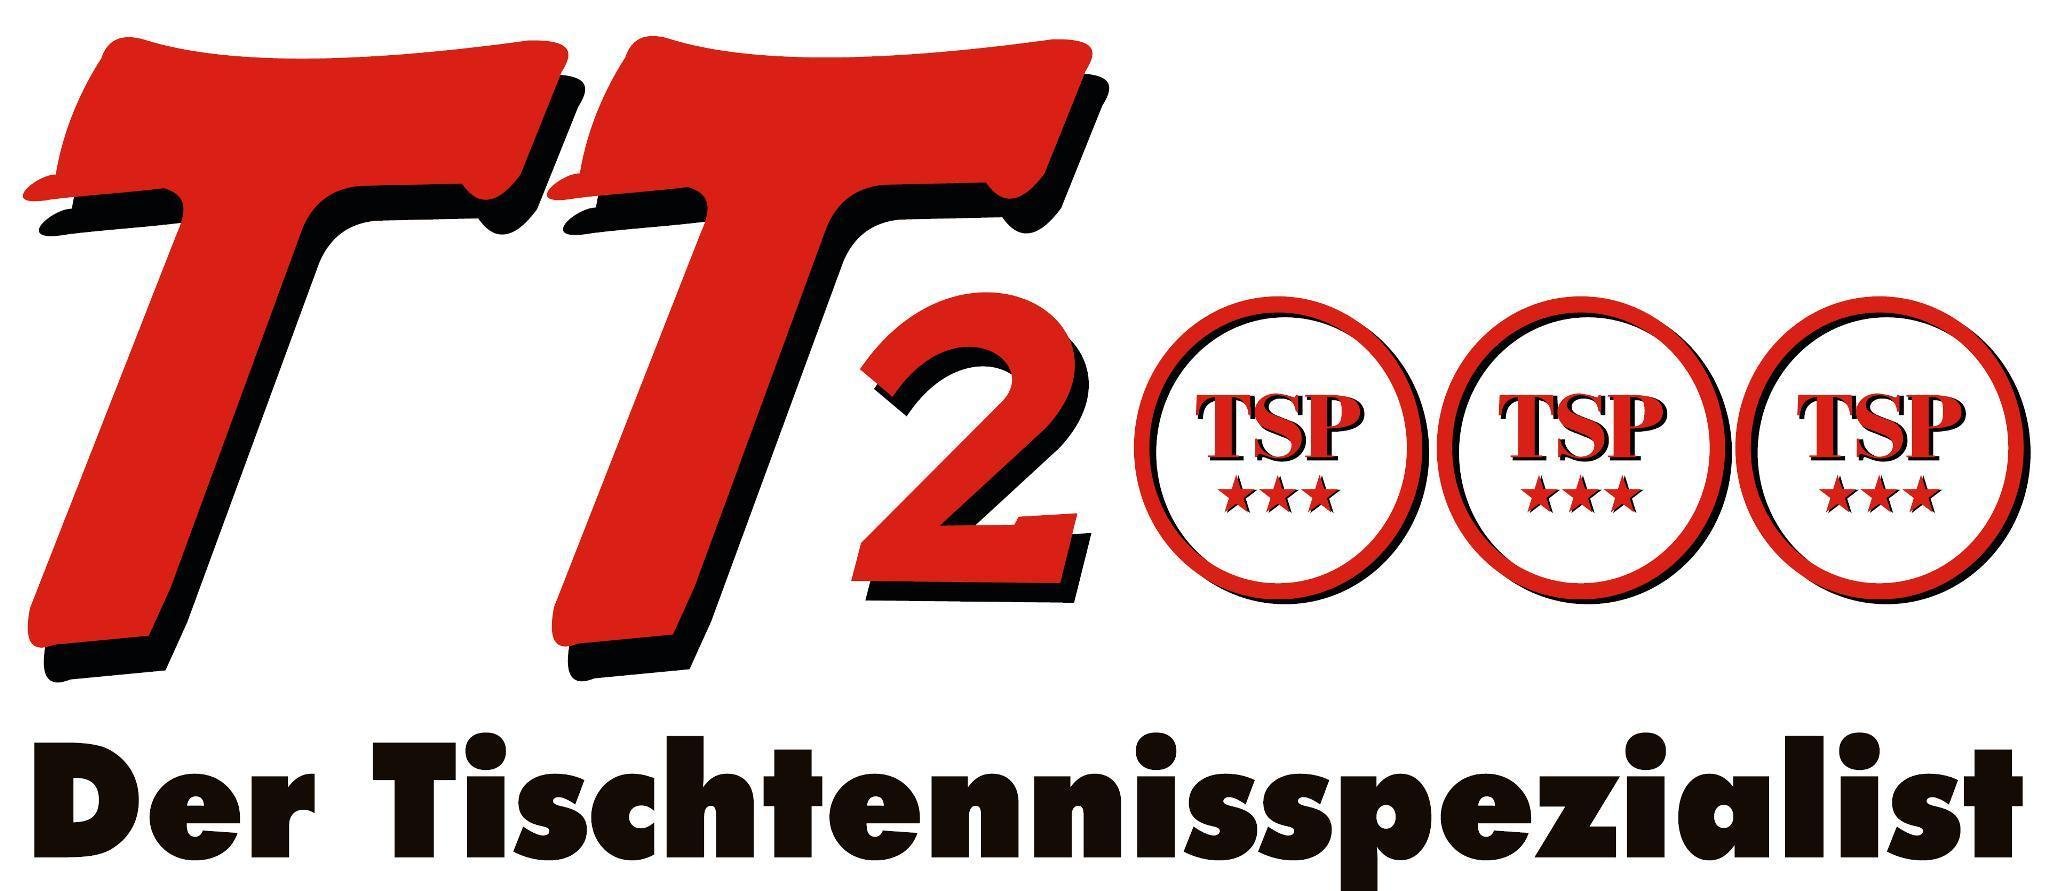 TT2000 Ihr Tischtennis-Onlineshop in Hannover, Thomas Förster